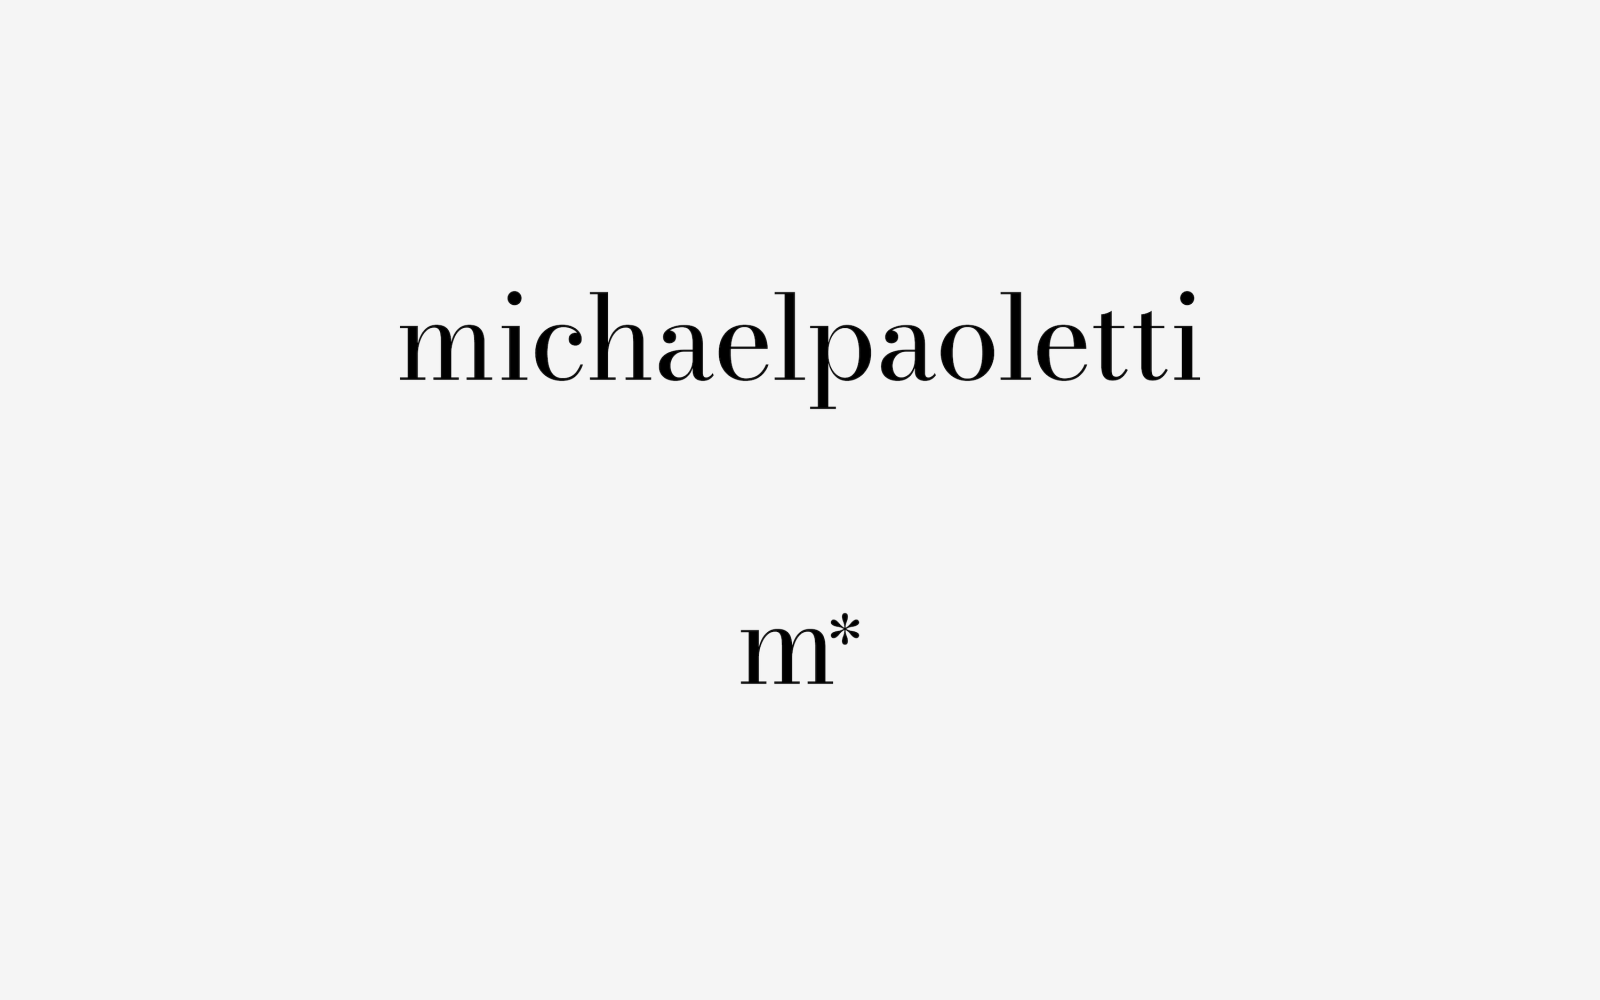 michaelpaoletti_m*4